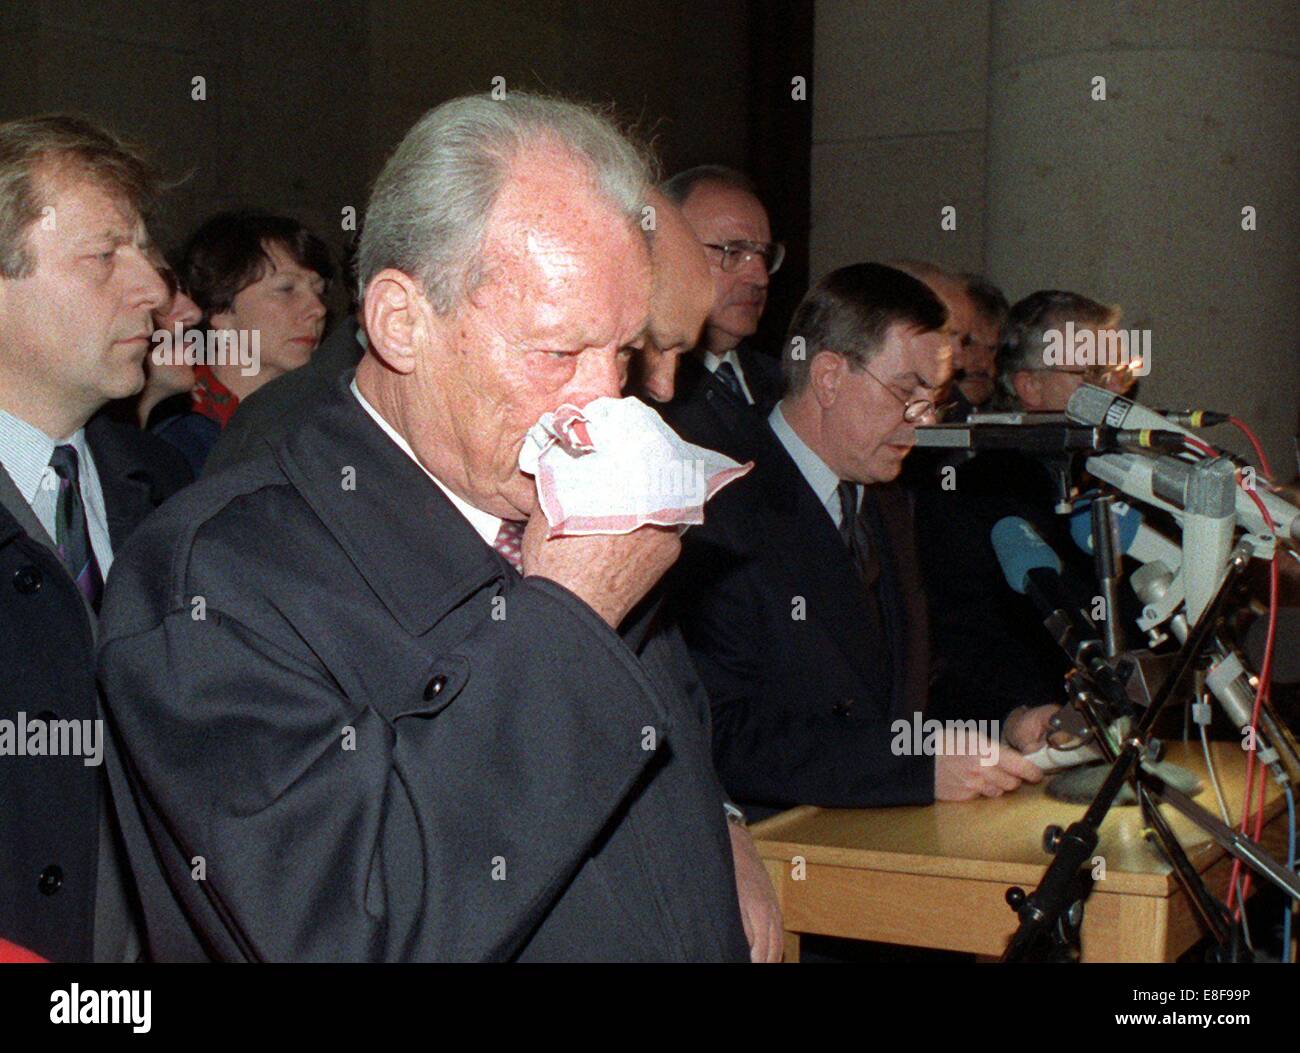 L'ex cancelliere tedesco Willy Brandt soffia il naso durante il discorso di Juergen Wohlrabe (R), altoparlante di Berlino il Parlamento, presso il pubblico principale raccogliendo un giorno dopo la caduta del muro esterno di Schoeneberg City Hall di Berlino Ovest, 10 novembre 1989. CDU (Partito cristiano democratico tedesco) politico Eberhard Diepgen (L) e collega di partito ex cancelliere Helmut Kohl (fondo) sono anche rappresentati. Il 9 novembre 1989 la RDT leadership ha dovuto cedere alla pressione crescente dalle strade e aperti alcuni valichi di frontiera per l'occidente. Foto Stock